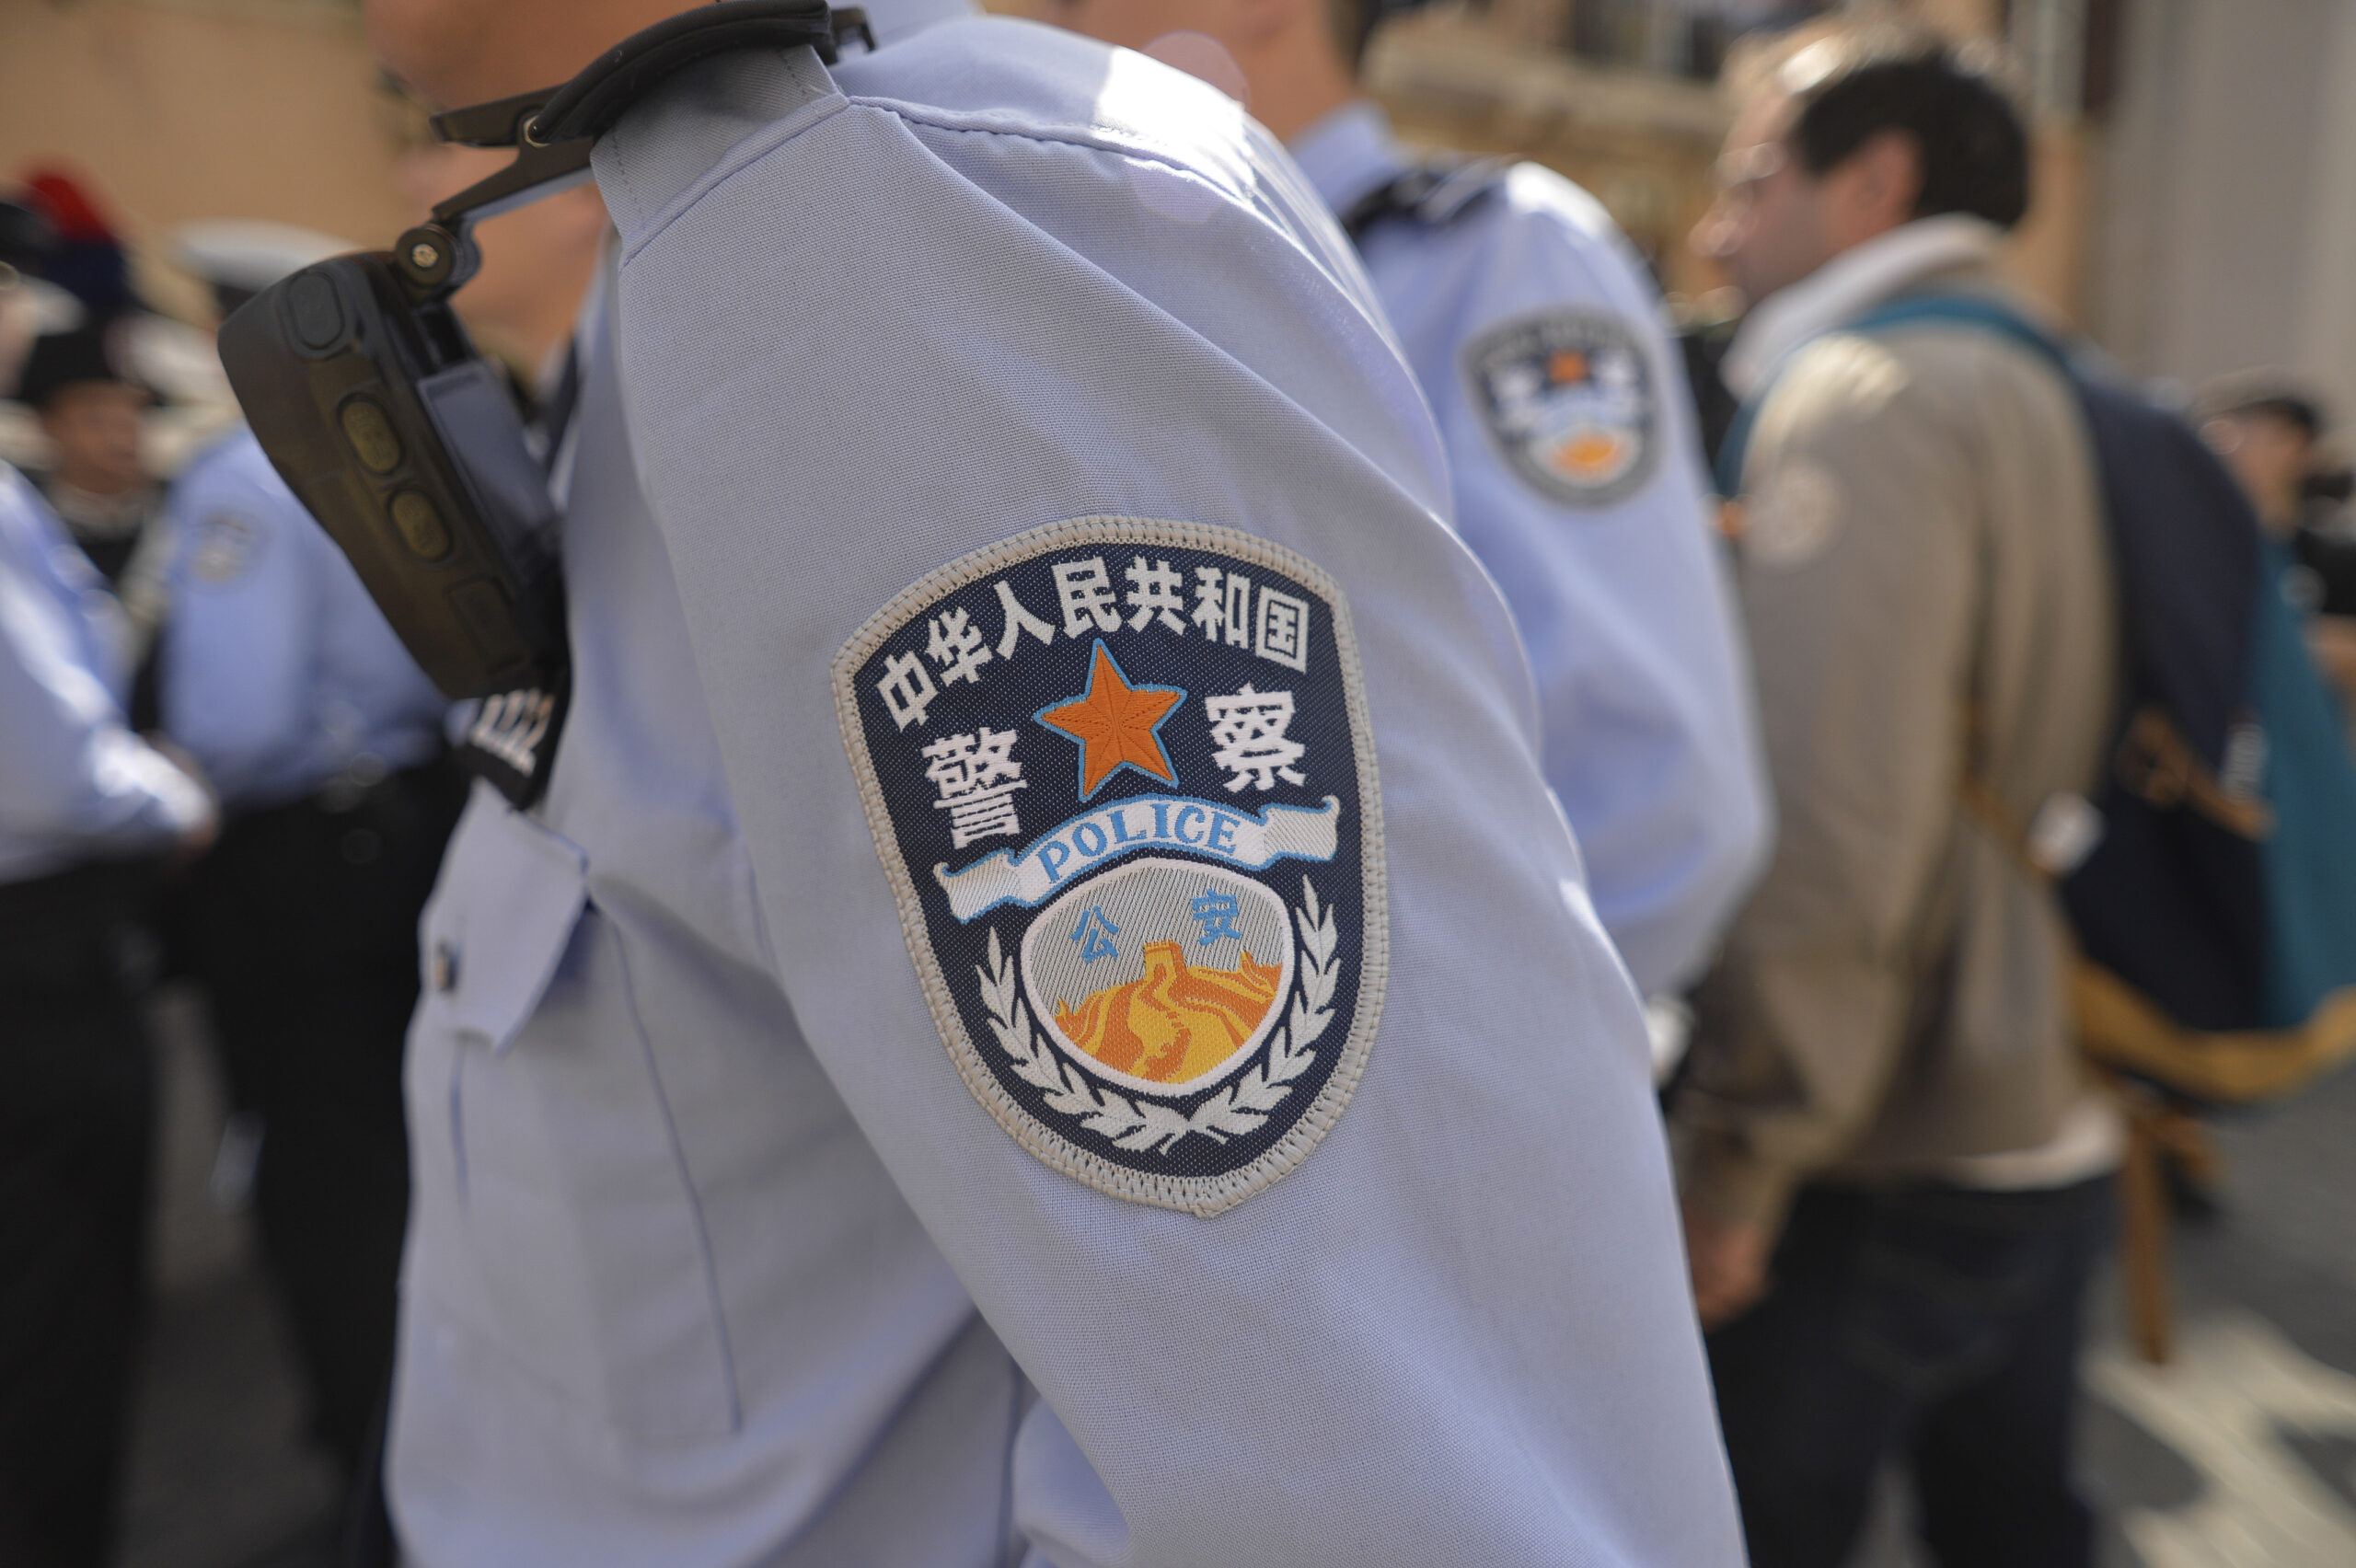 Stazioni di polizia cinese in Italia? Il governo non esclude sanzioni